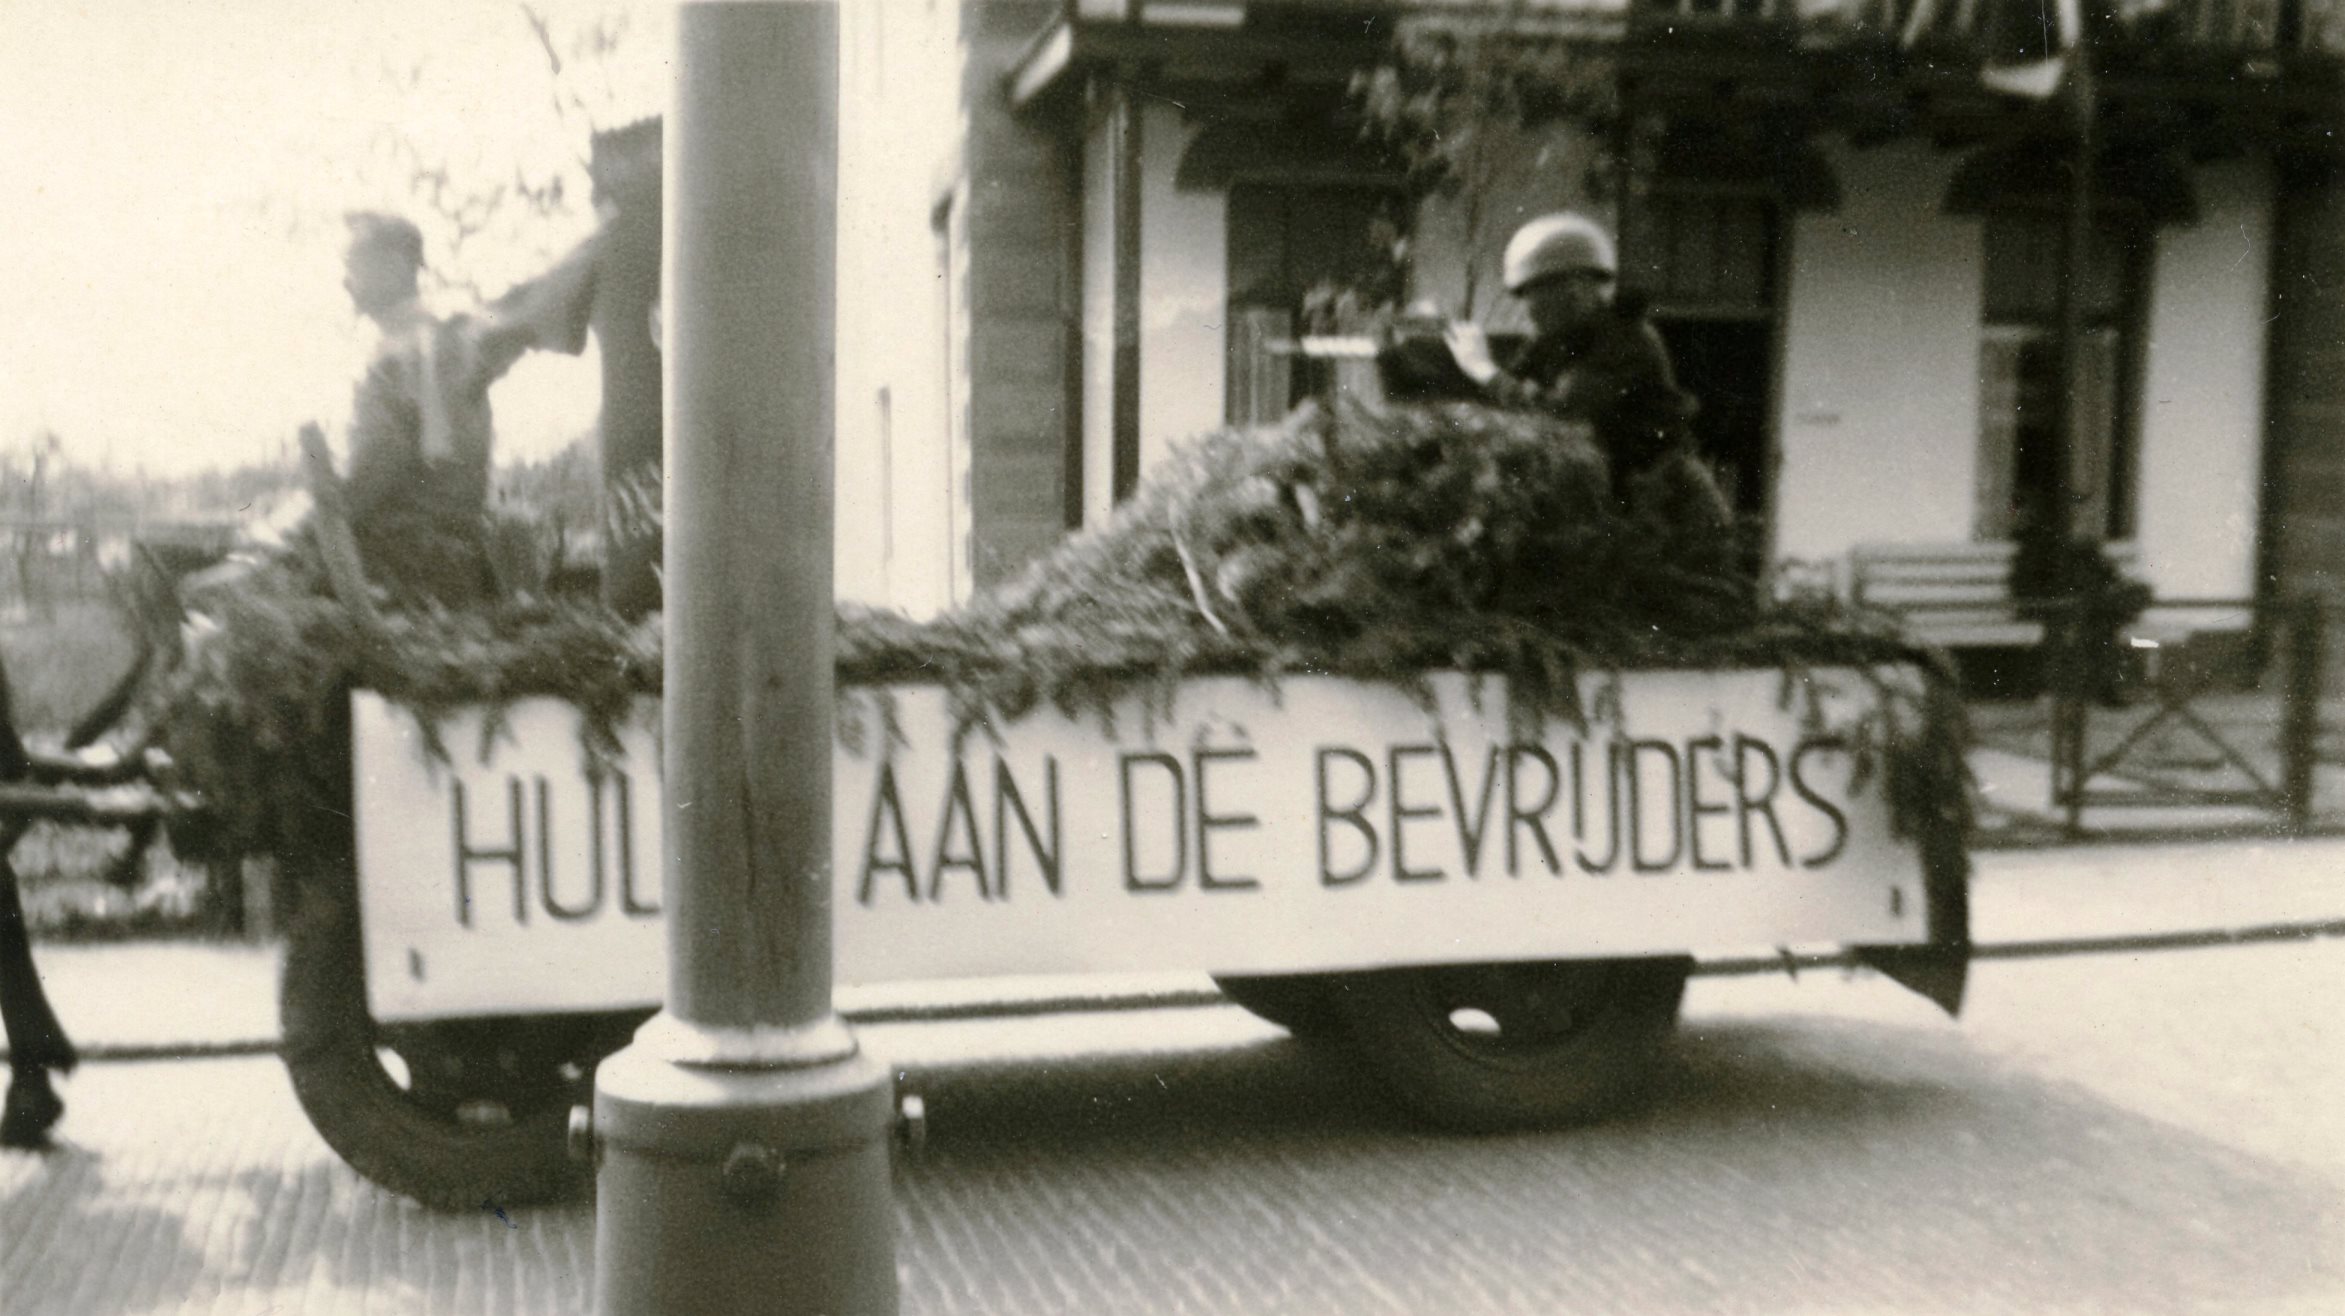 Renkum bij Kerkstraat 54 Hulde aan de bevrijders Koninginnedag 1945 of Bevrijdingsdag Foto 1945 of 1946 Collectie Henny de Ruiter.